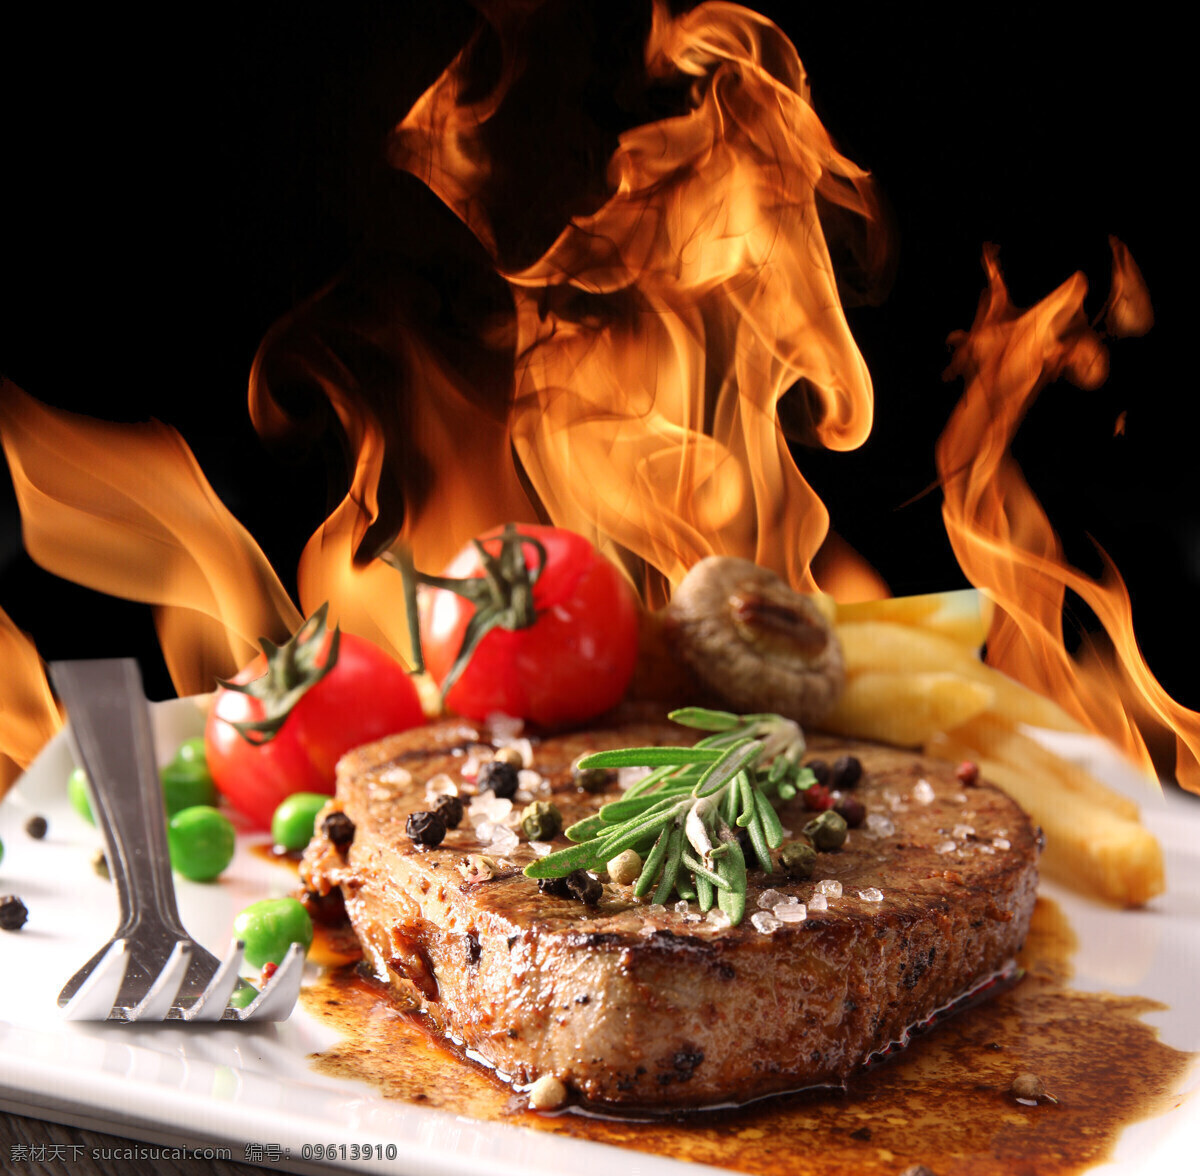 火焰 牛排 火苗 烤肉 烤牛排 牛肉 烧烤美食 美味 食物摄影 美食图片 餐饮美食